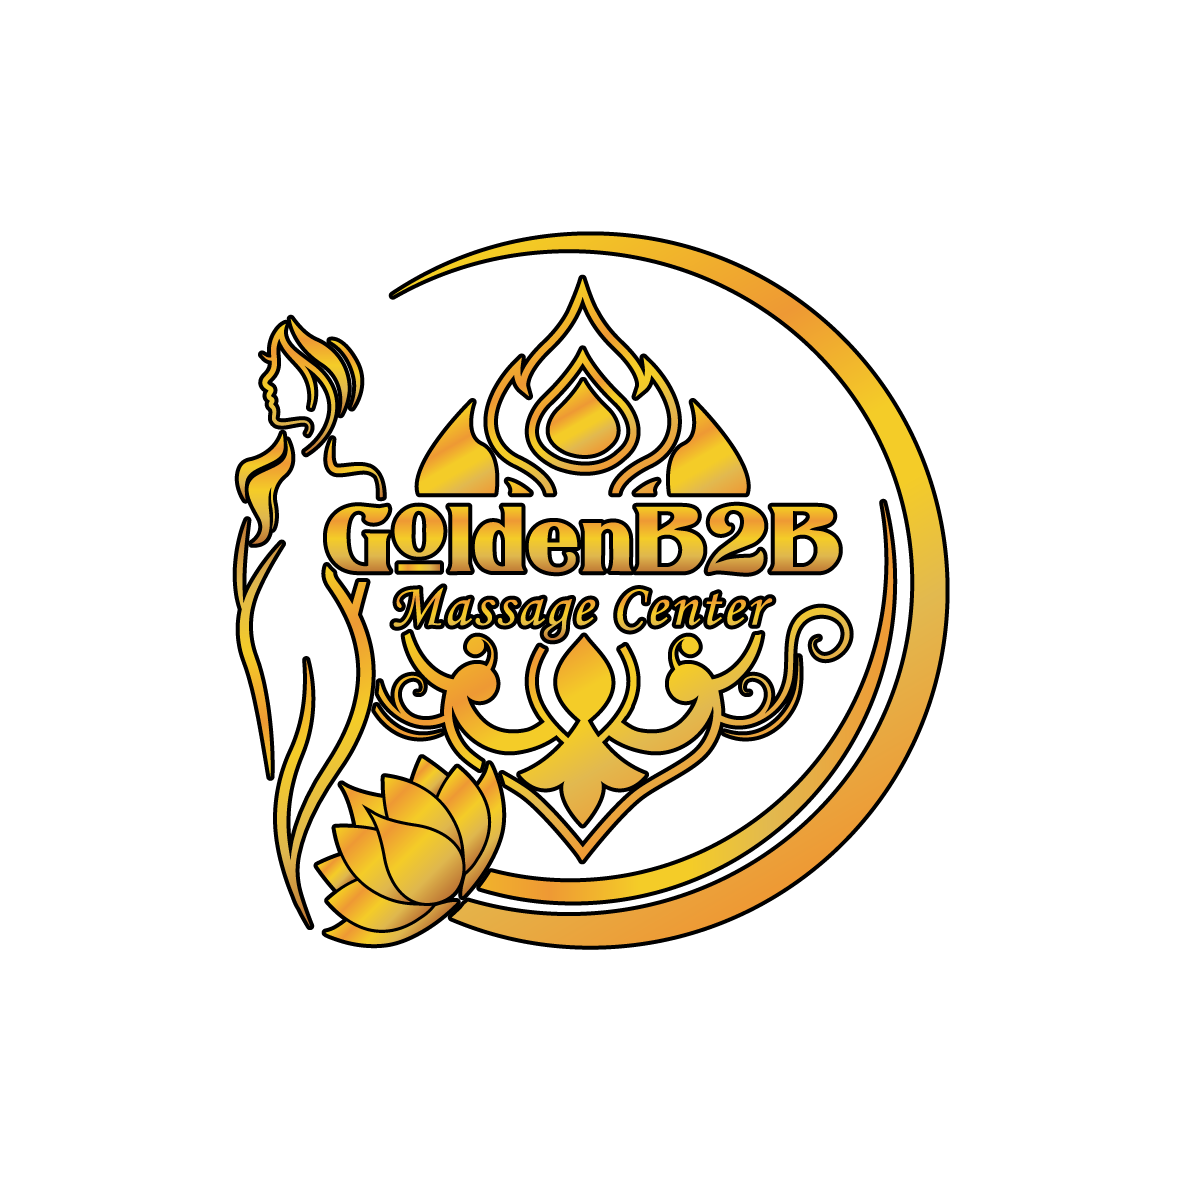 Goldenb2b Massages